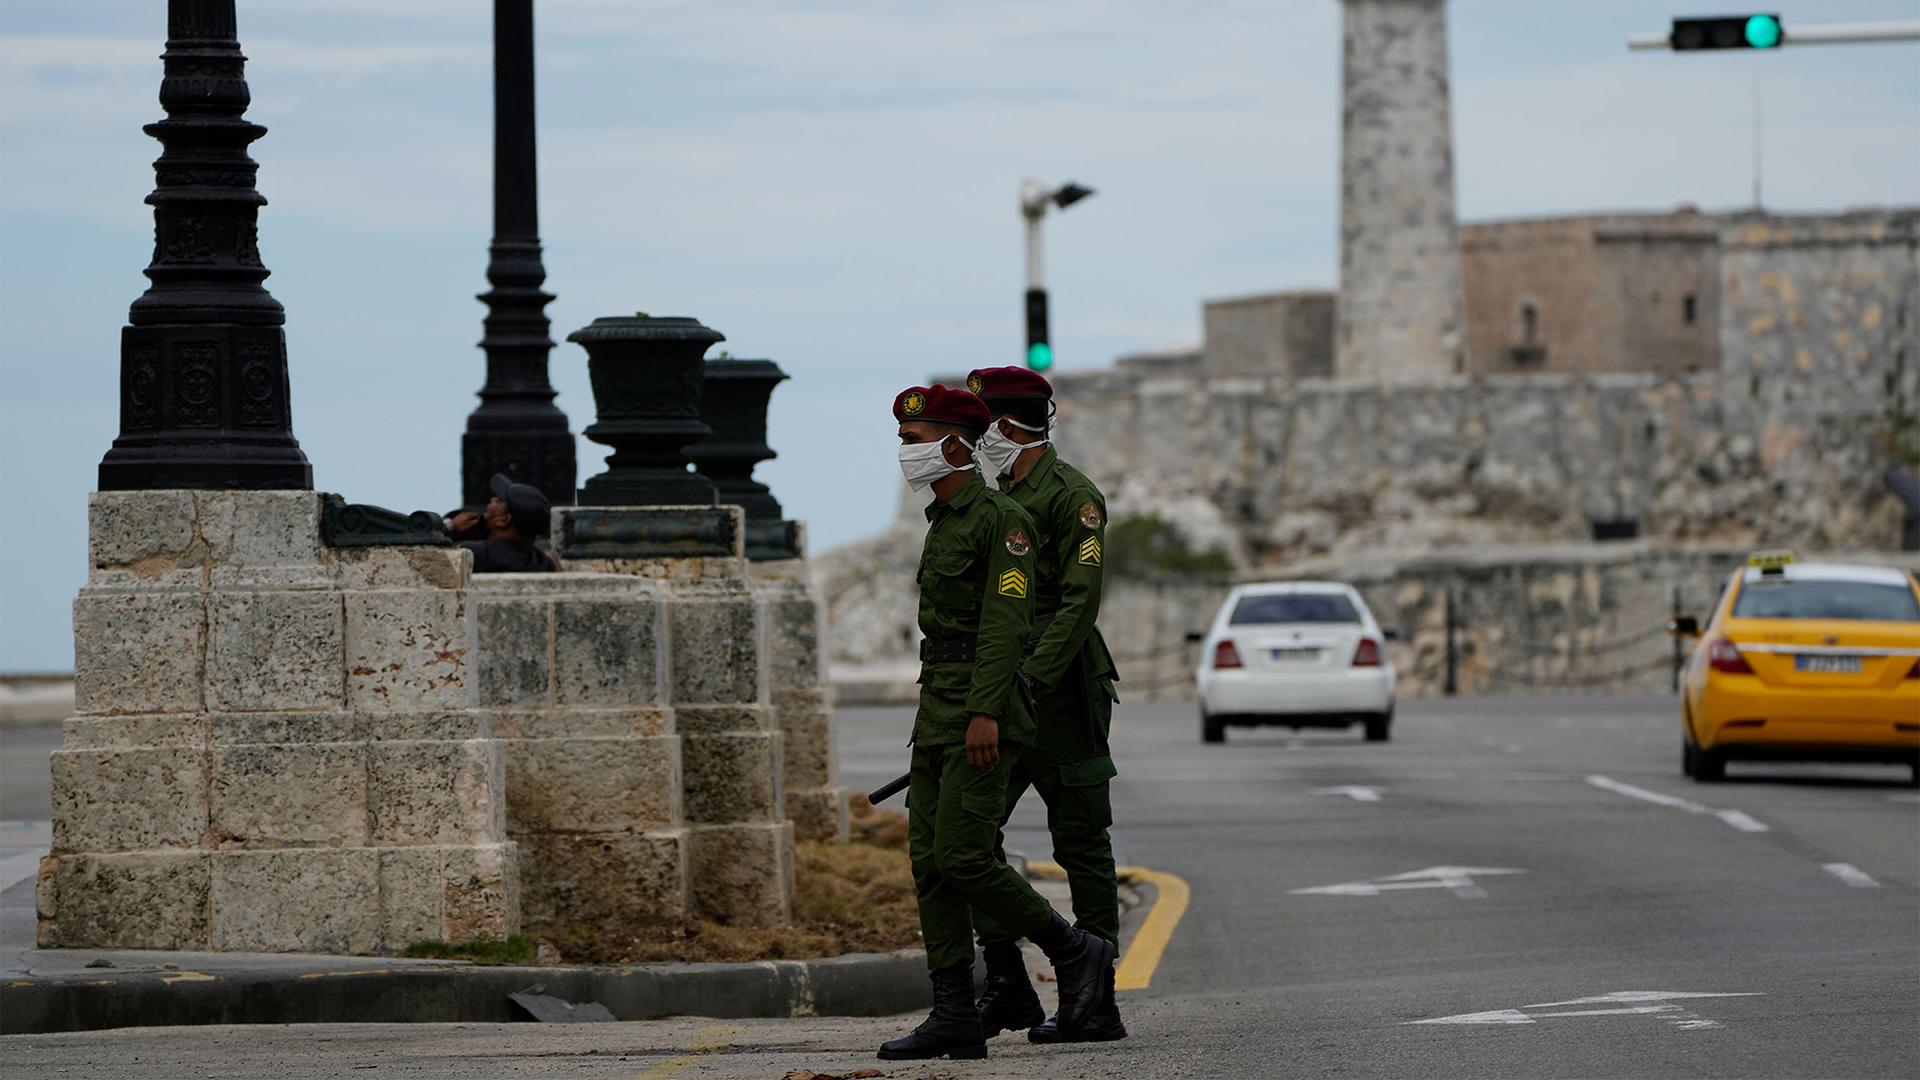 Soldiers patrol along the Malecón seawall in Havana, Cuba